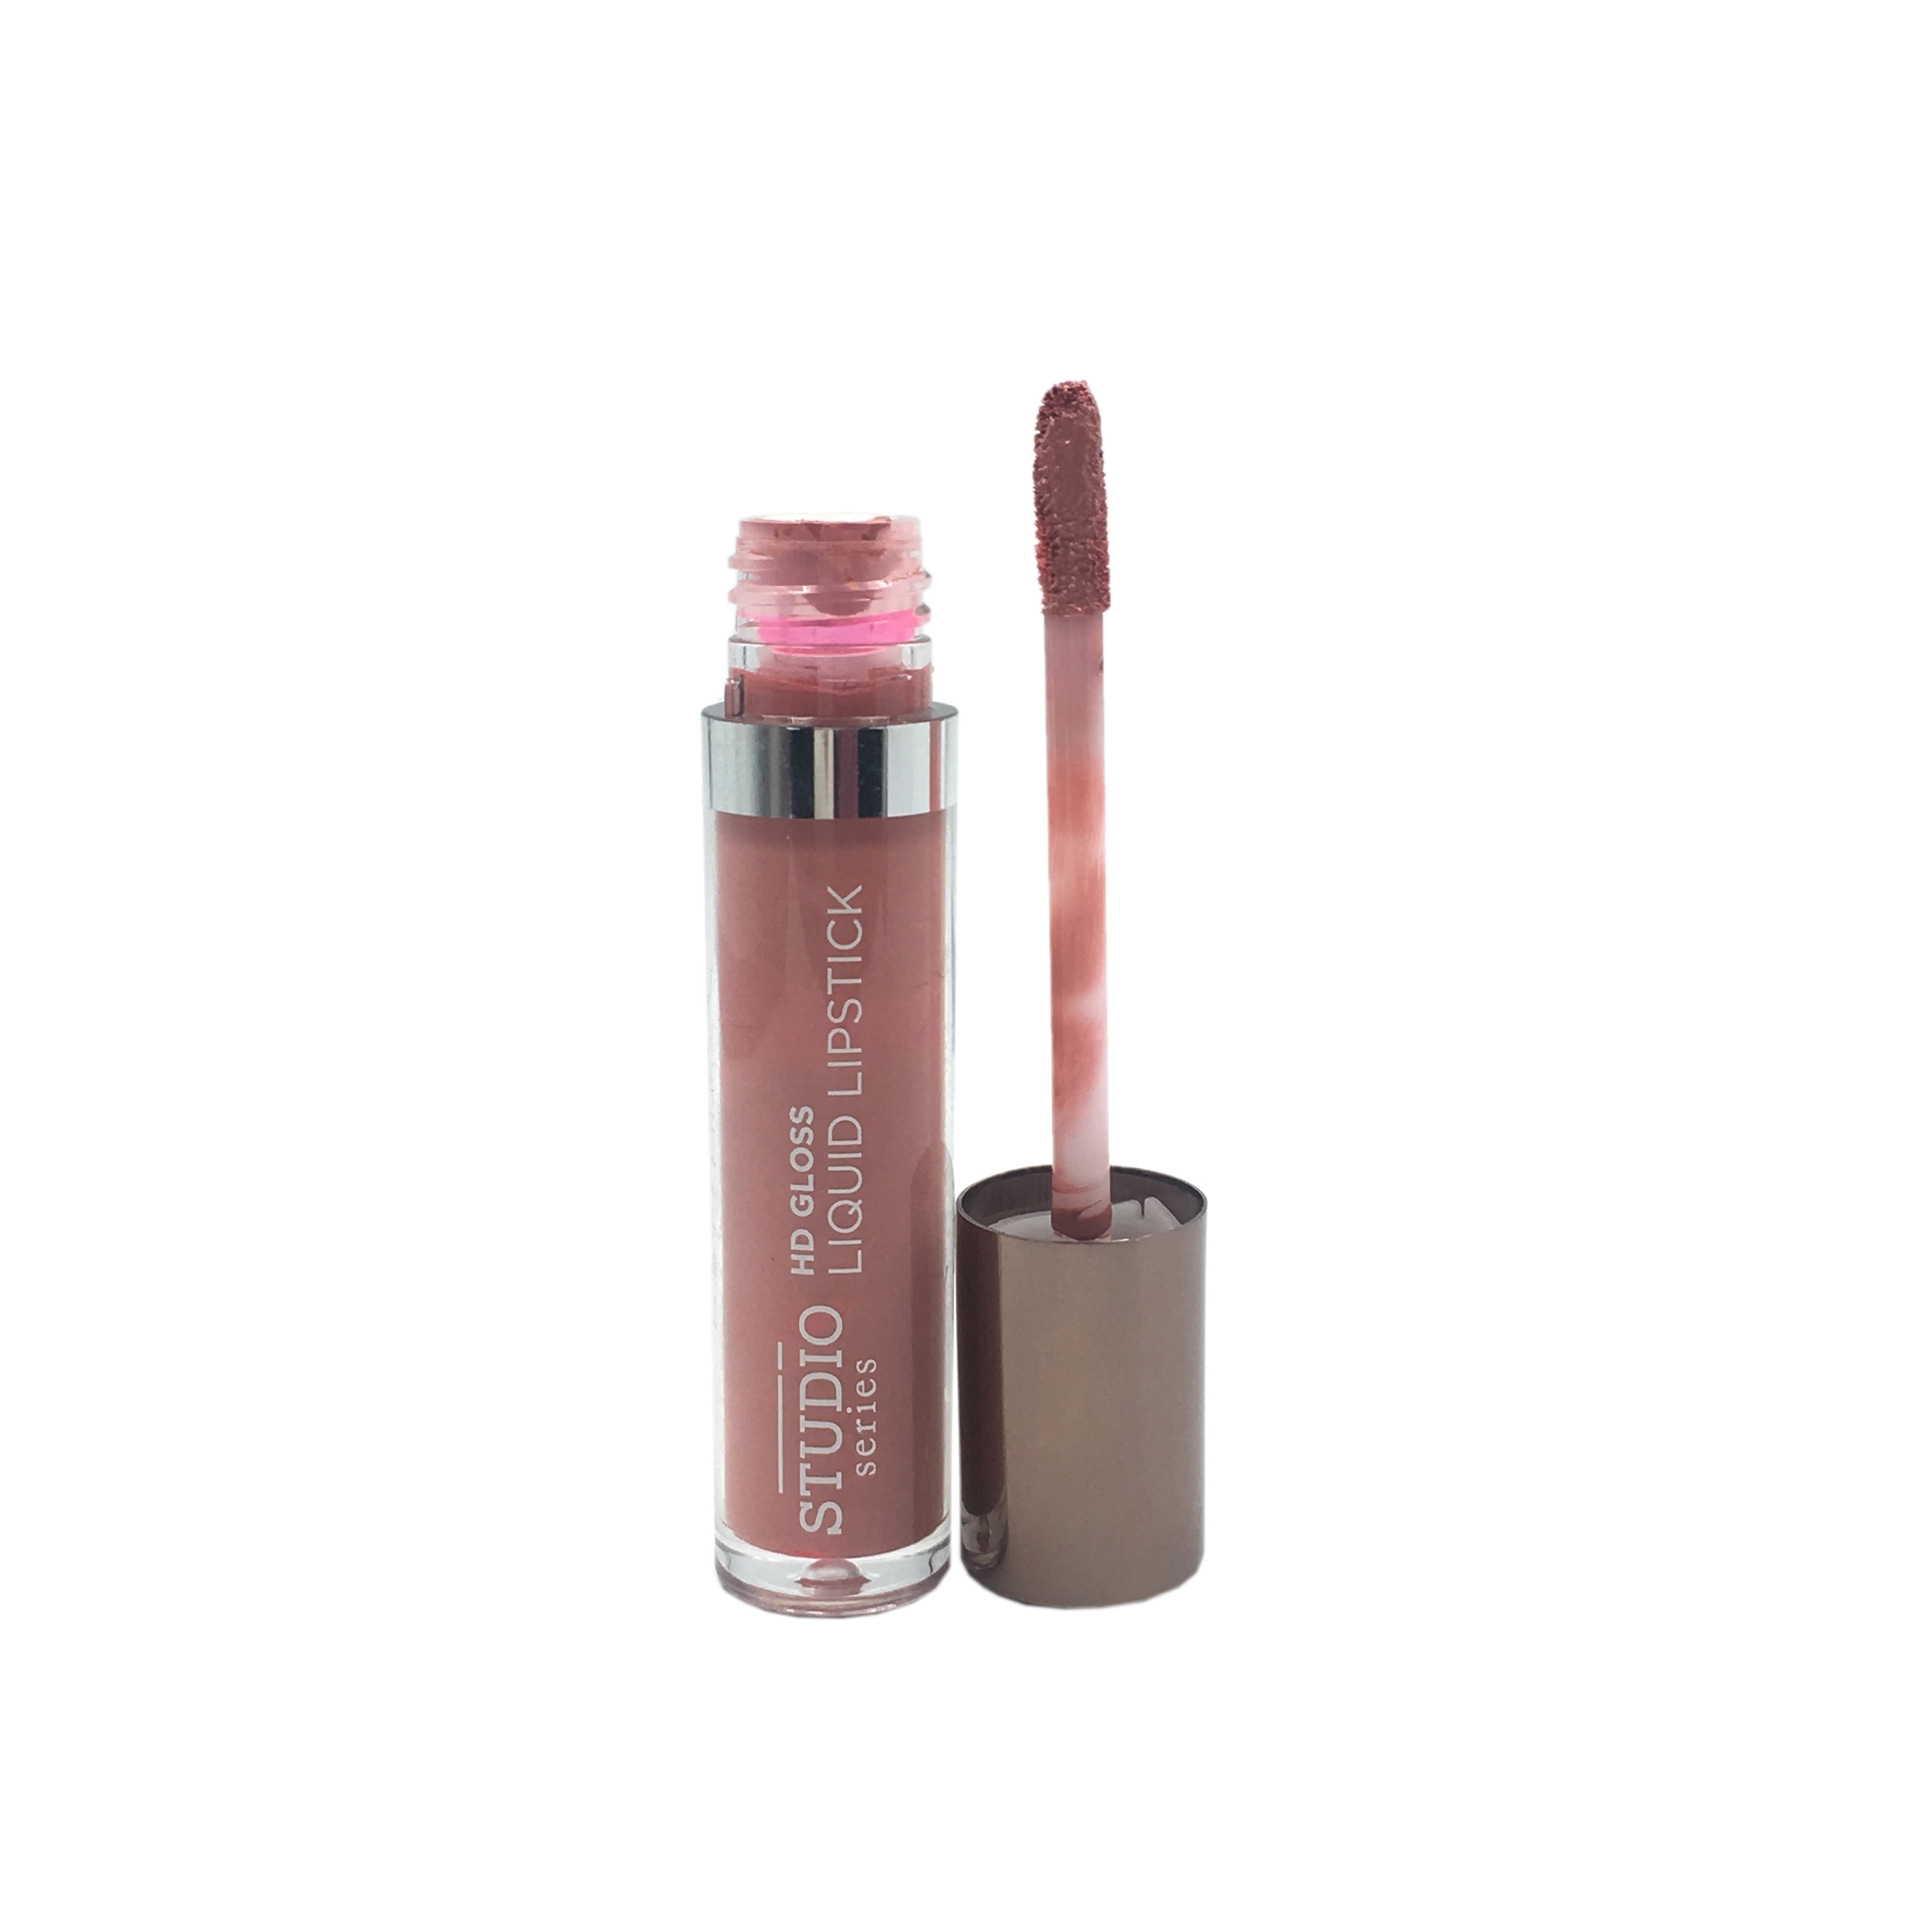 Mineral Botanica 009 Miss Wonderfull Studio Series HD Gloss Liquid Lipstick Lips